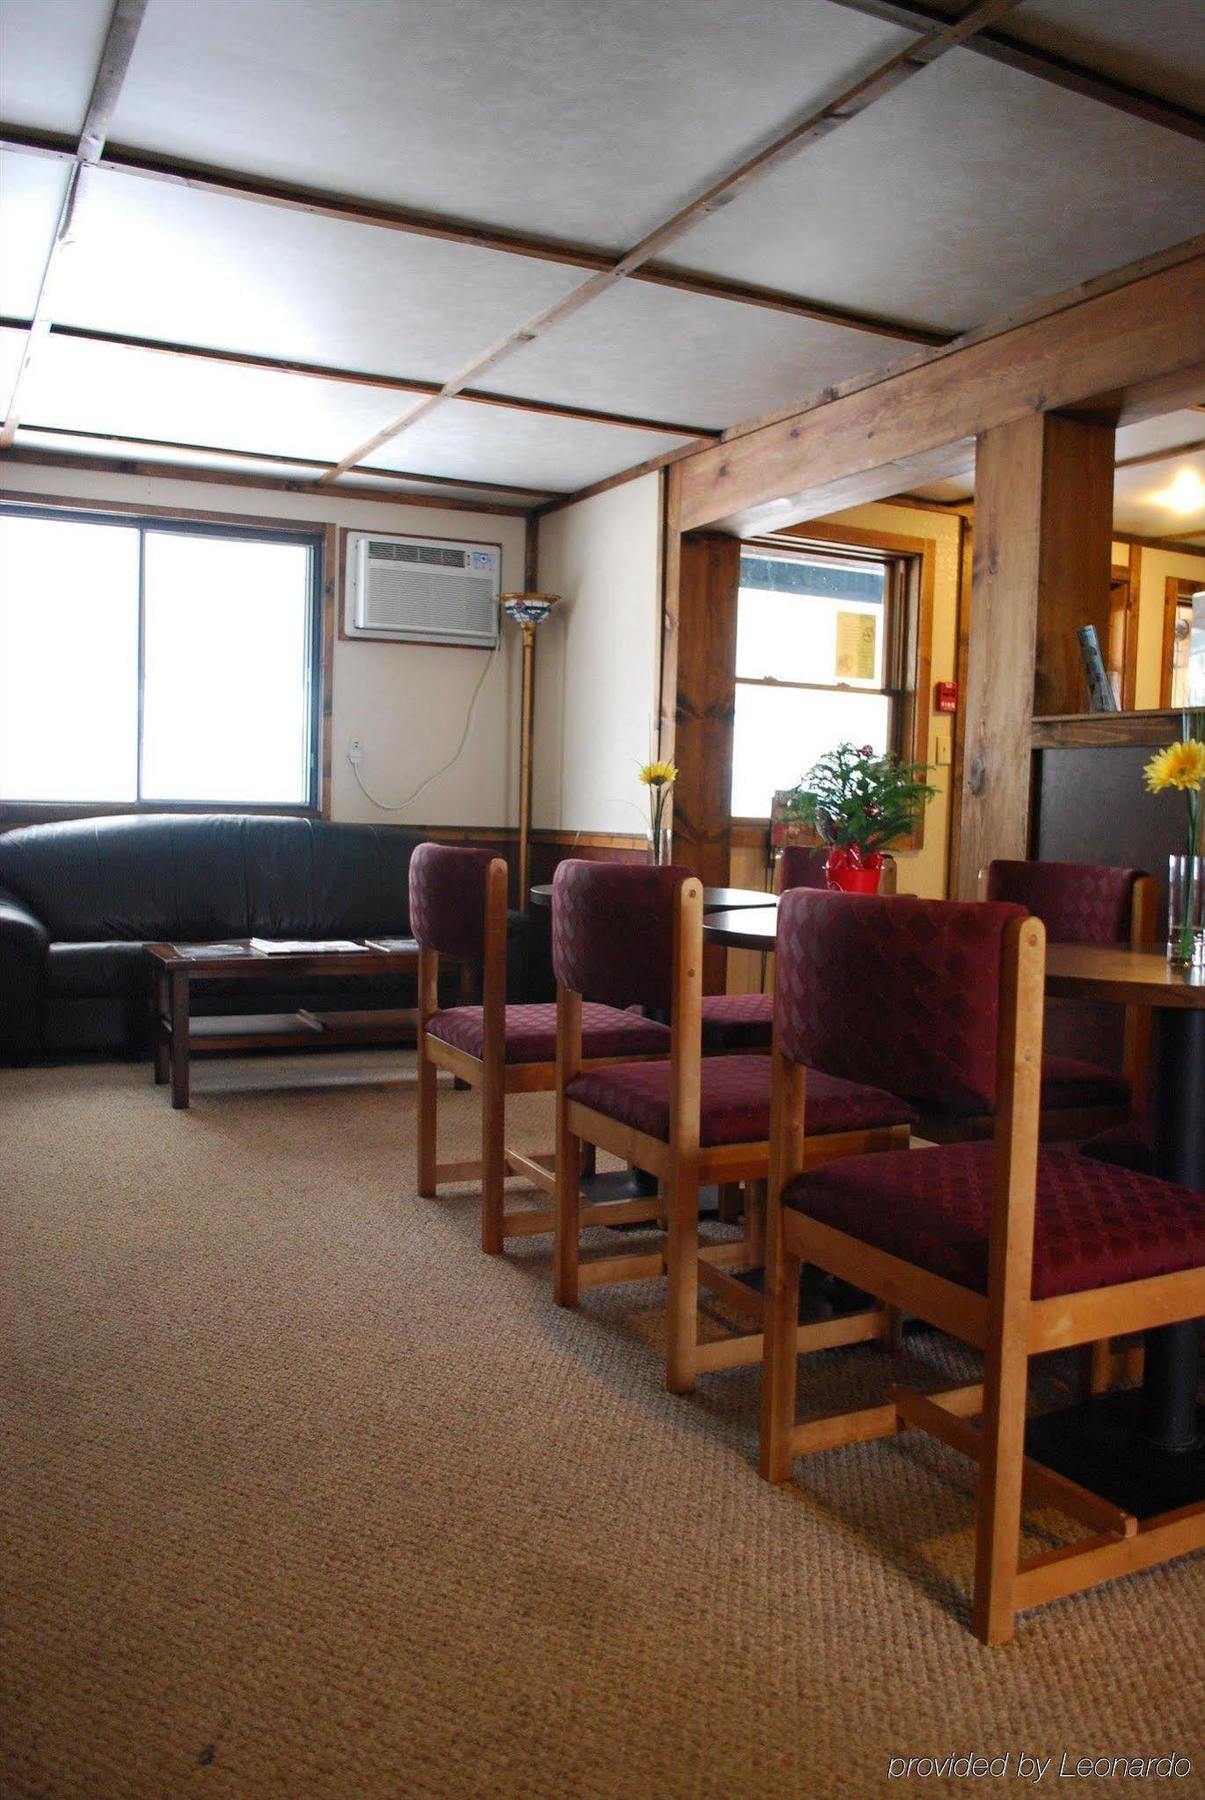 דדווד Black Hills Inn & Suites מראה פנימי תמונה